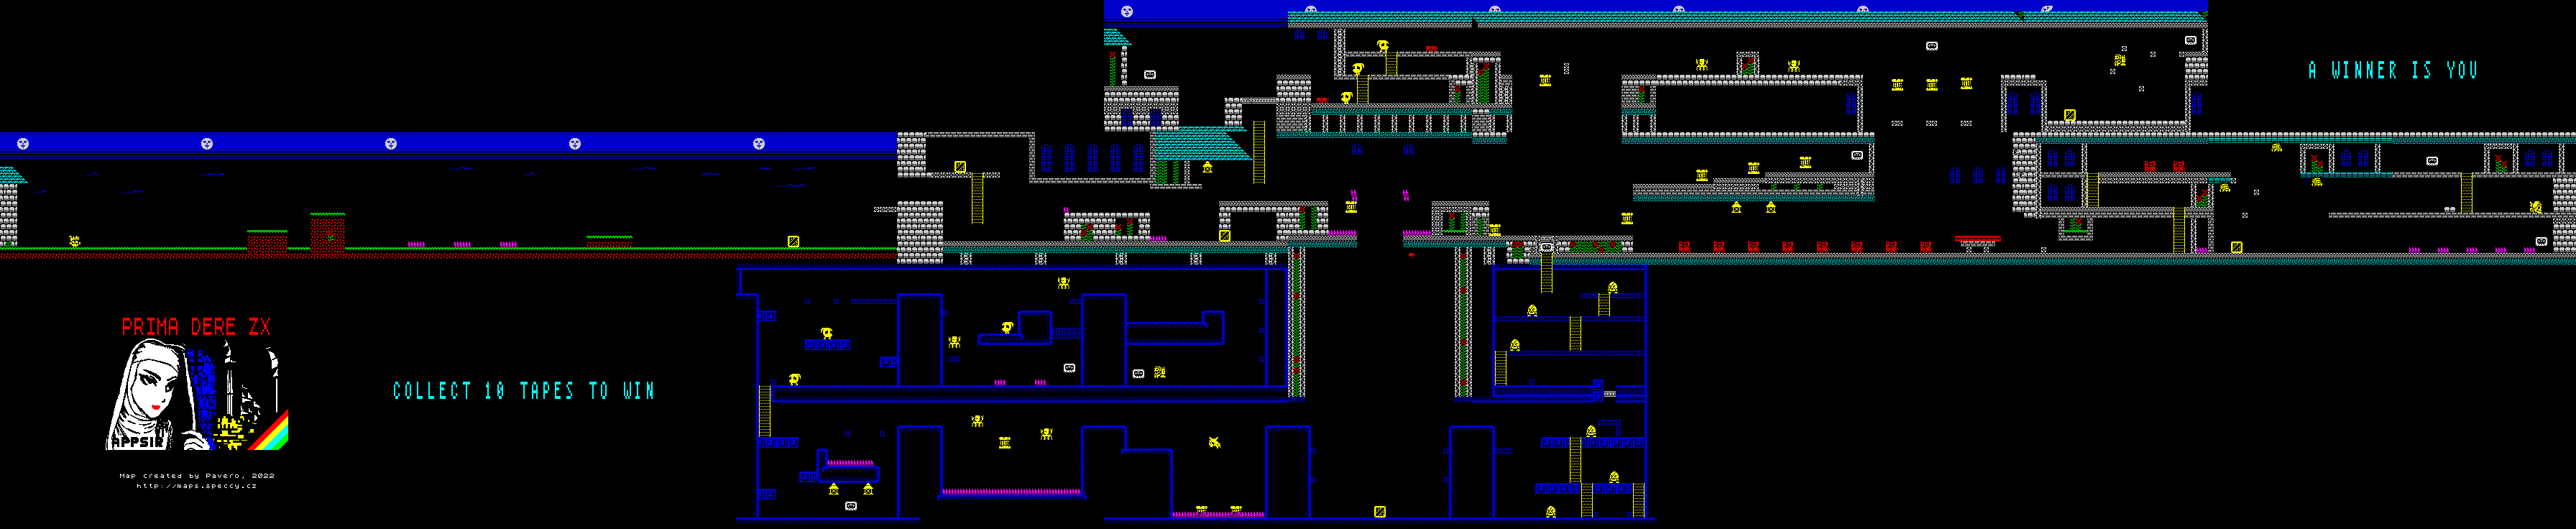 Prima Dere ZX - The Map